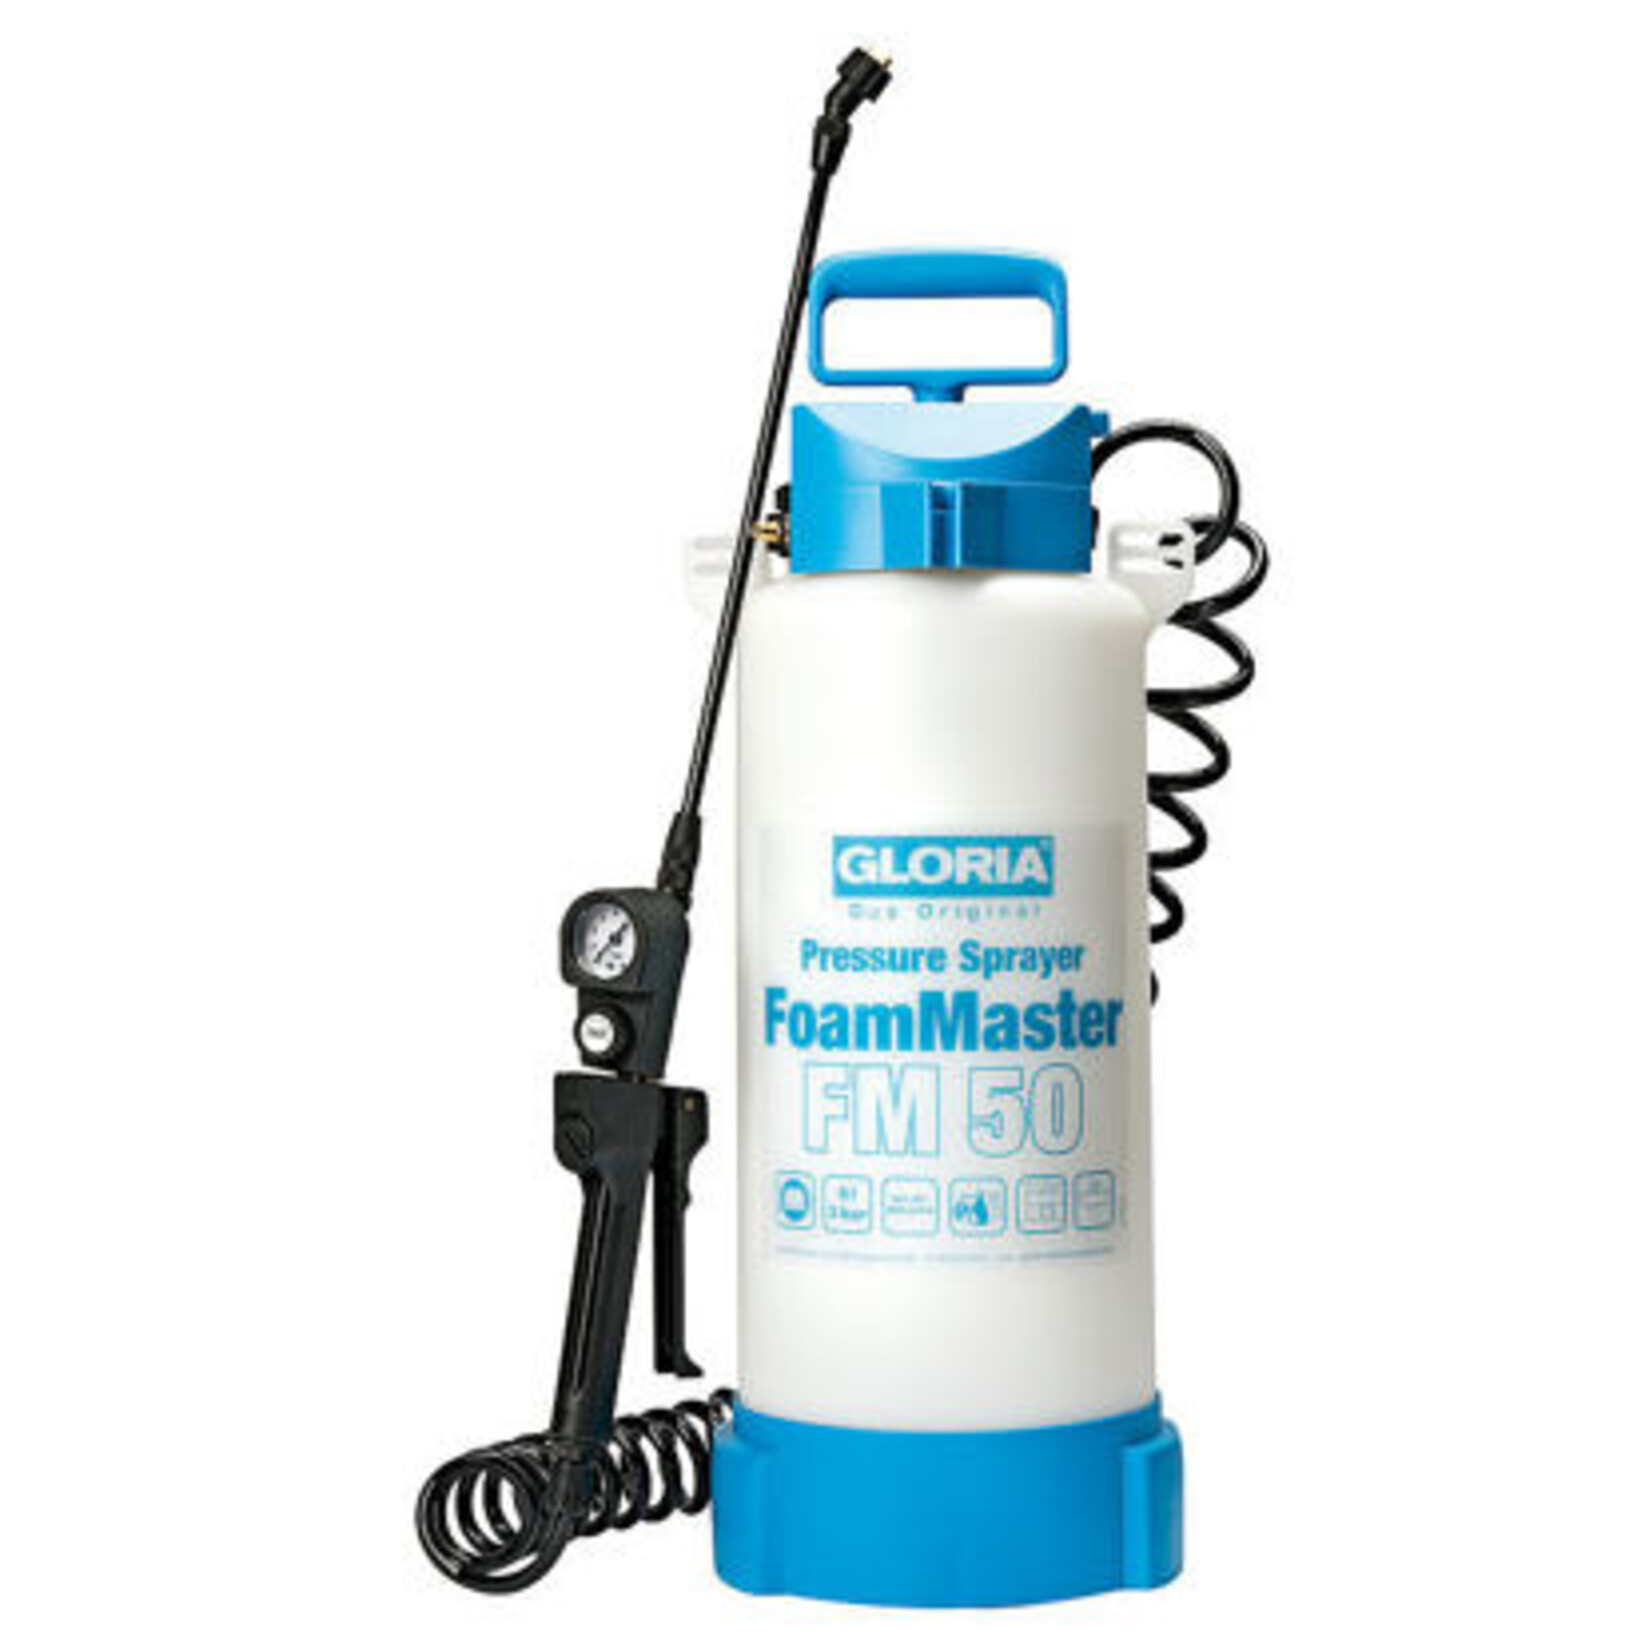 Drukspuit Foam Master FM50 Gloria, 5-liter